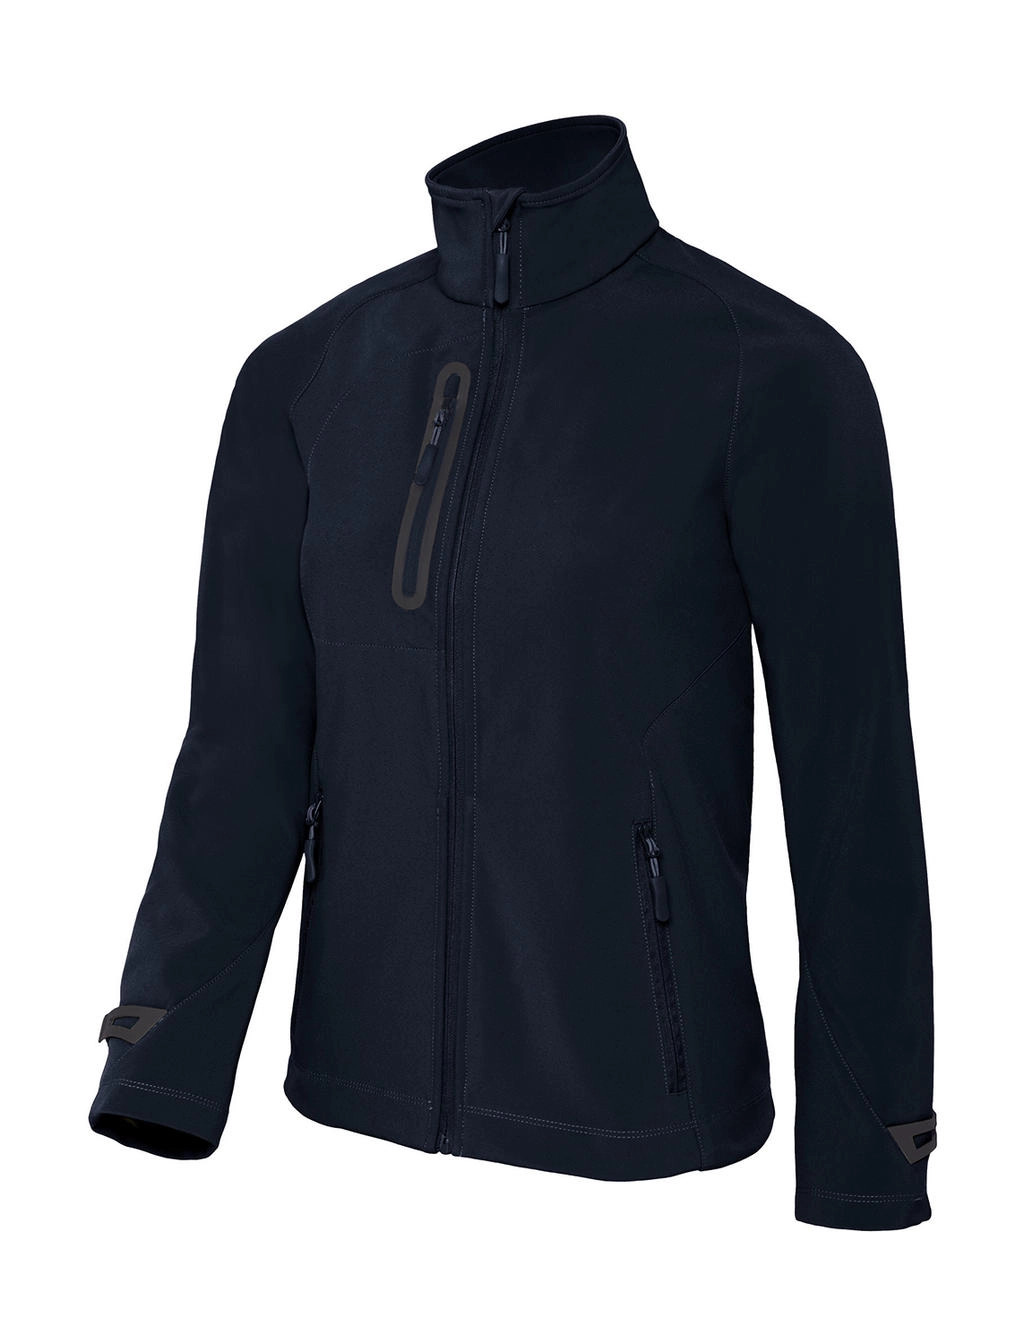 X-Lite Softshell/women Jacket zum Besticken und Bedrucken in der Farbe Navy mit Ihren Logo, Schriftzug oder Motiv.